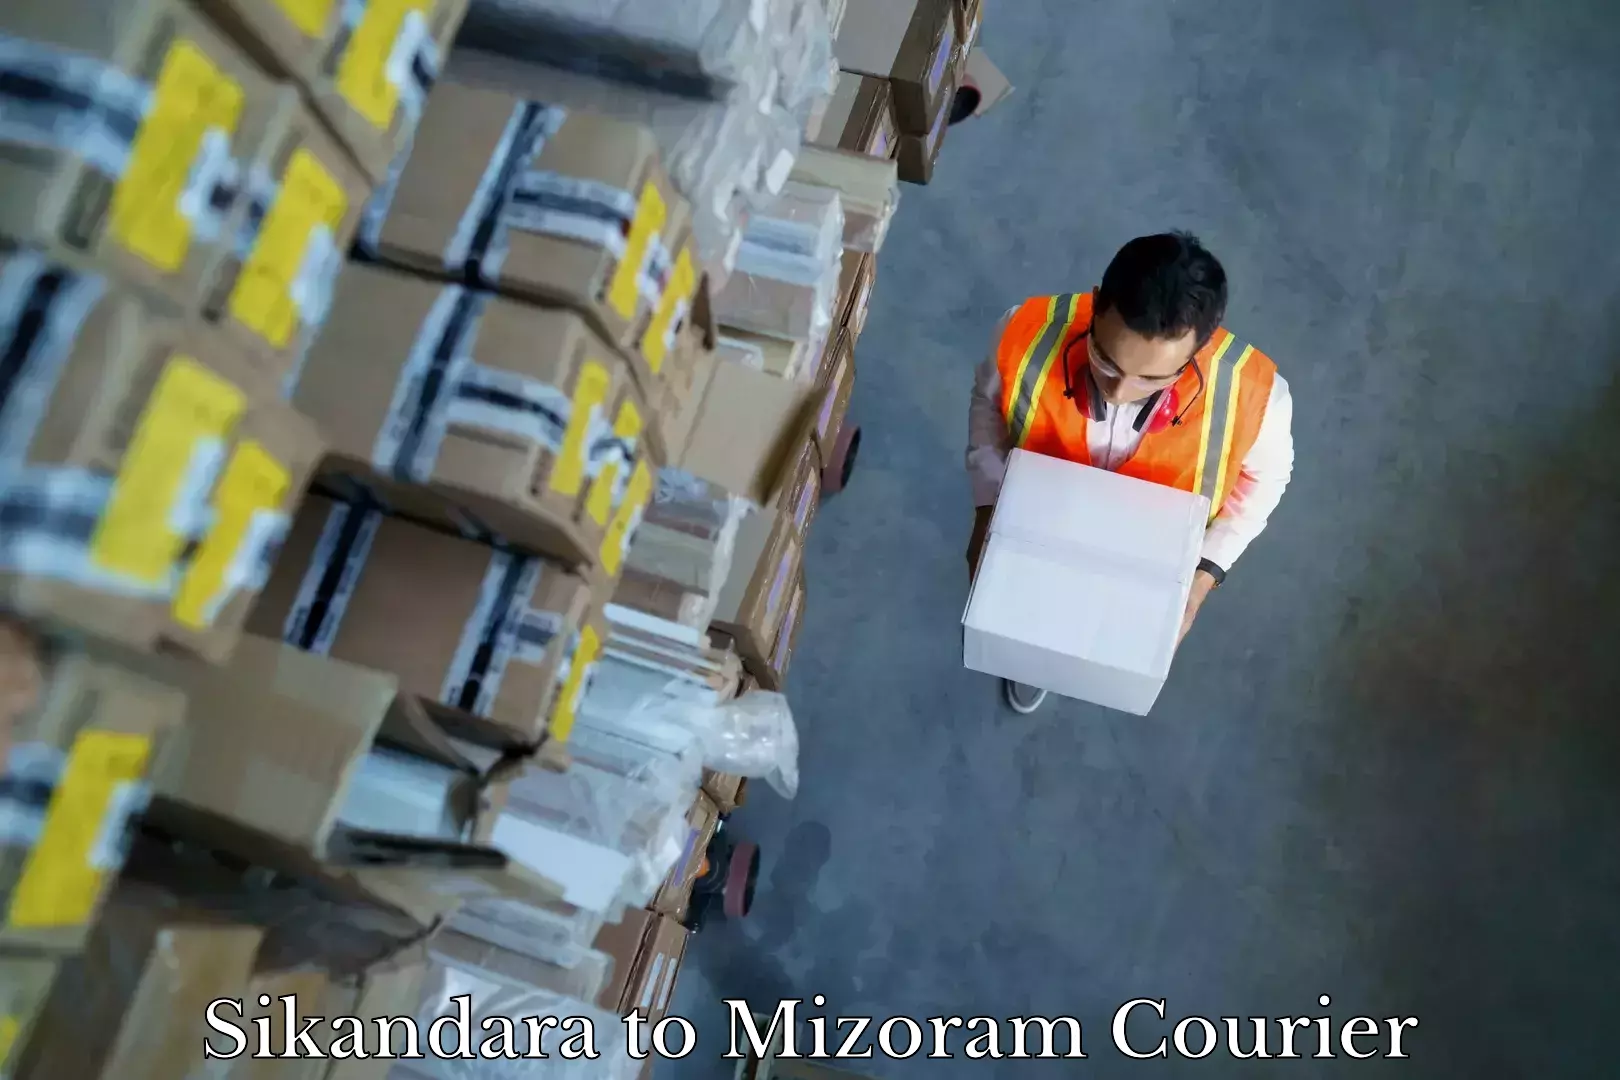 Furniture moving experts in Sikandara to Mizoram